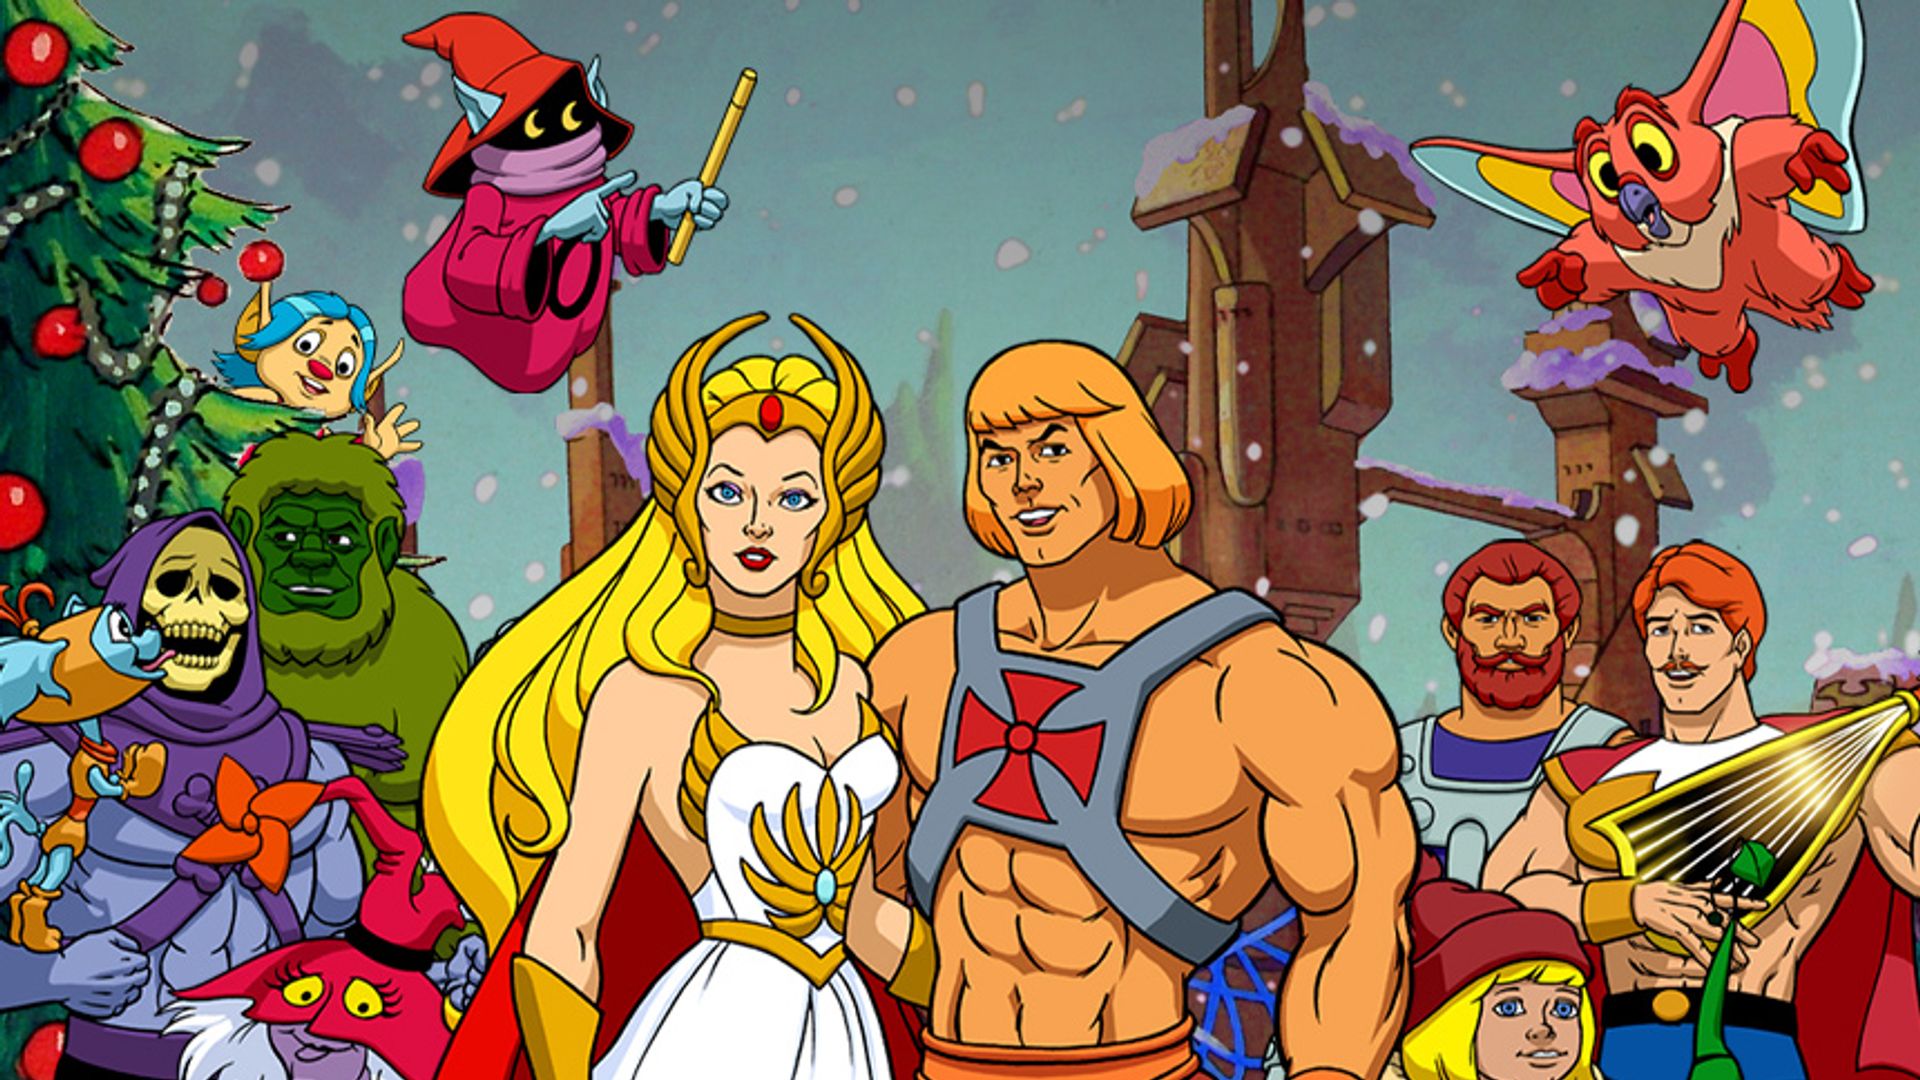 He-Man und She-Ra: Weihnachten auf Eternia